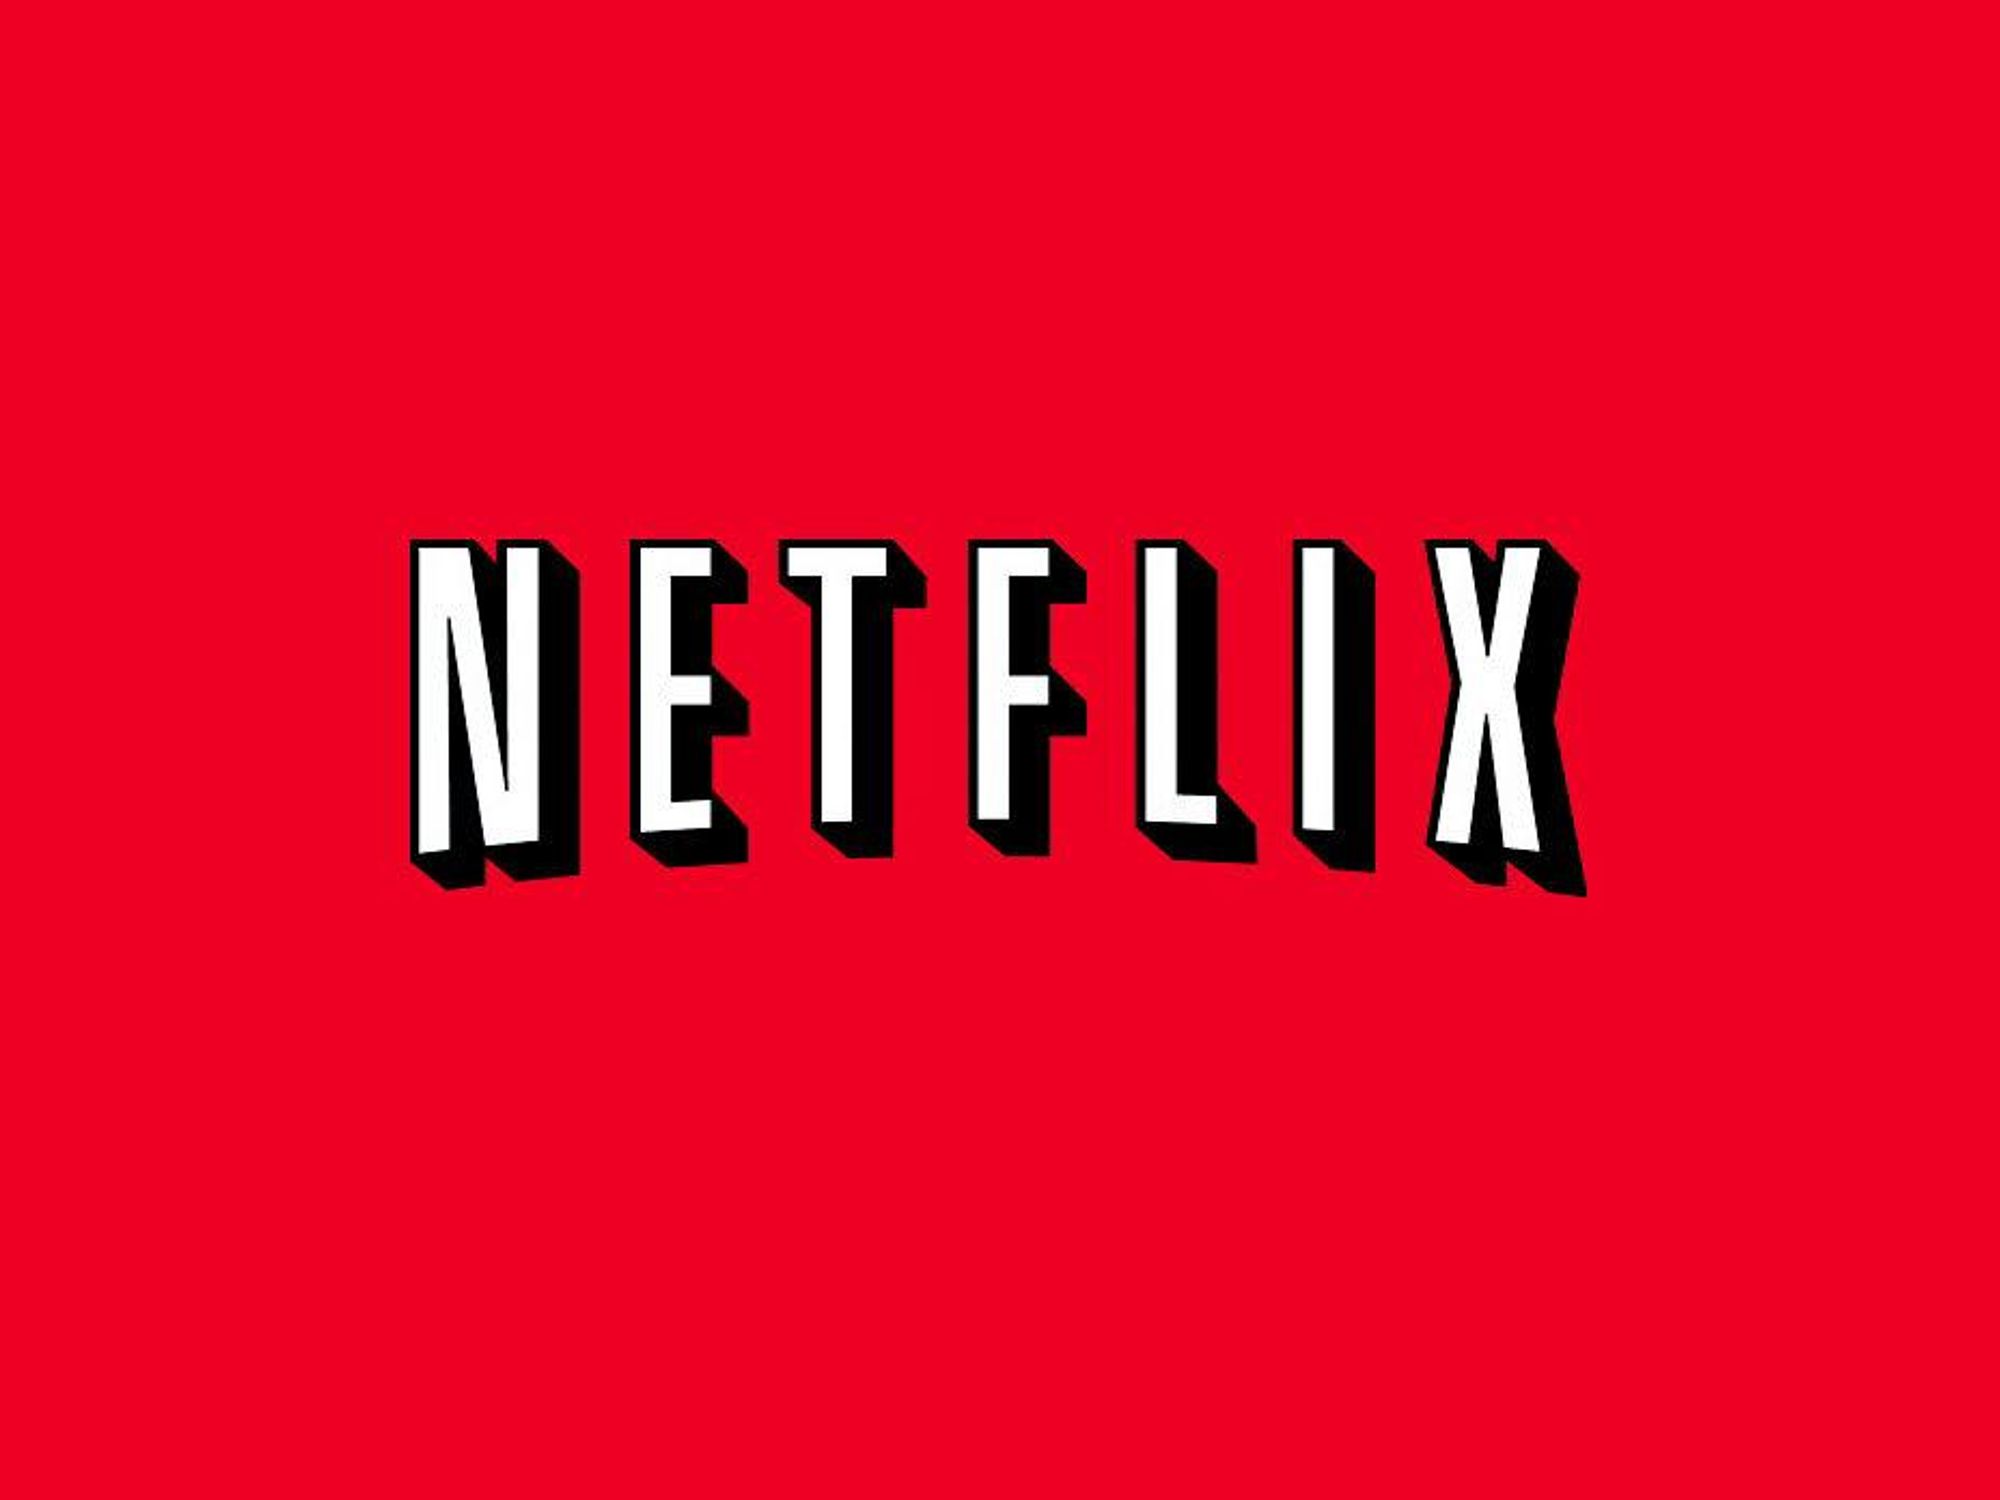 News_Netflix_logo_March 2011